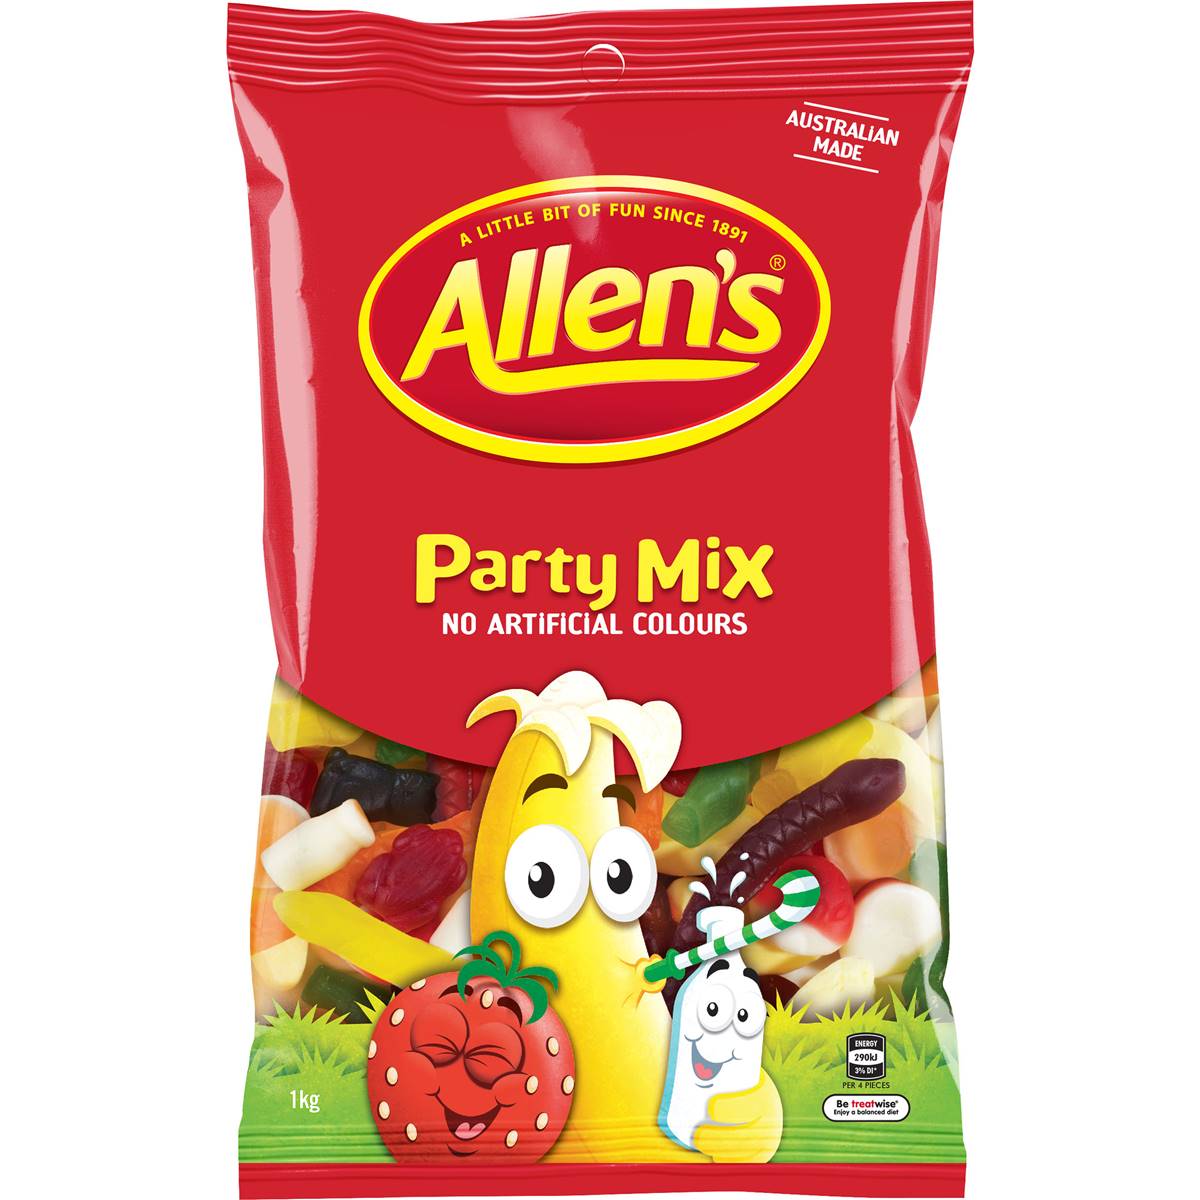 Calories in Allen's Allen's Party Mix Bulk Lollies